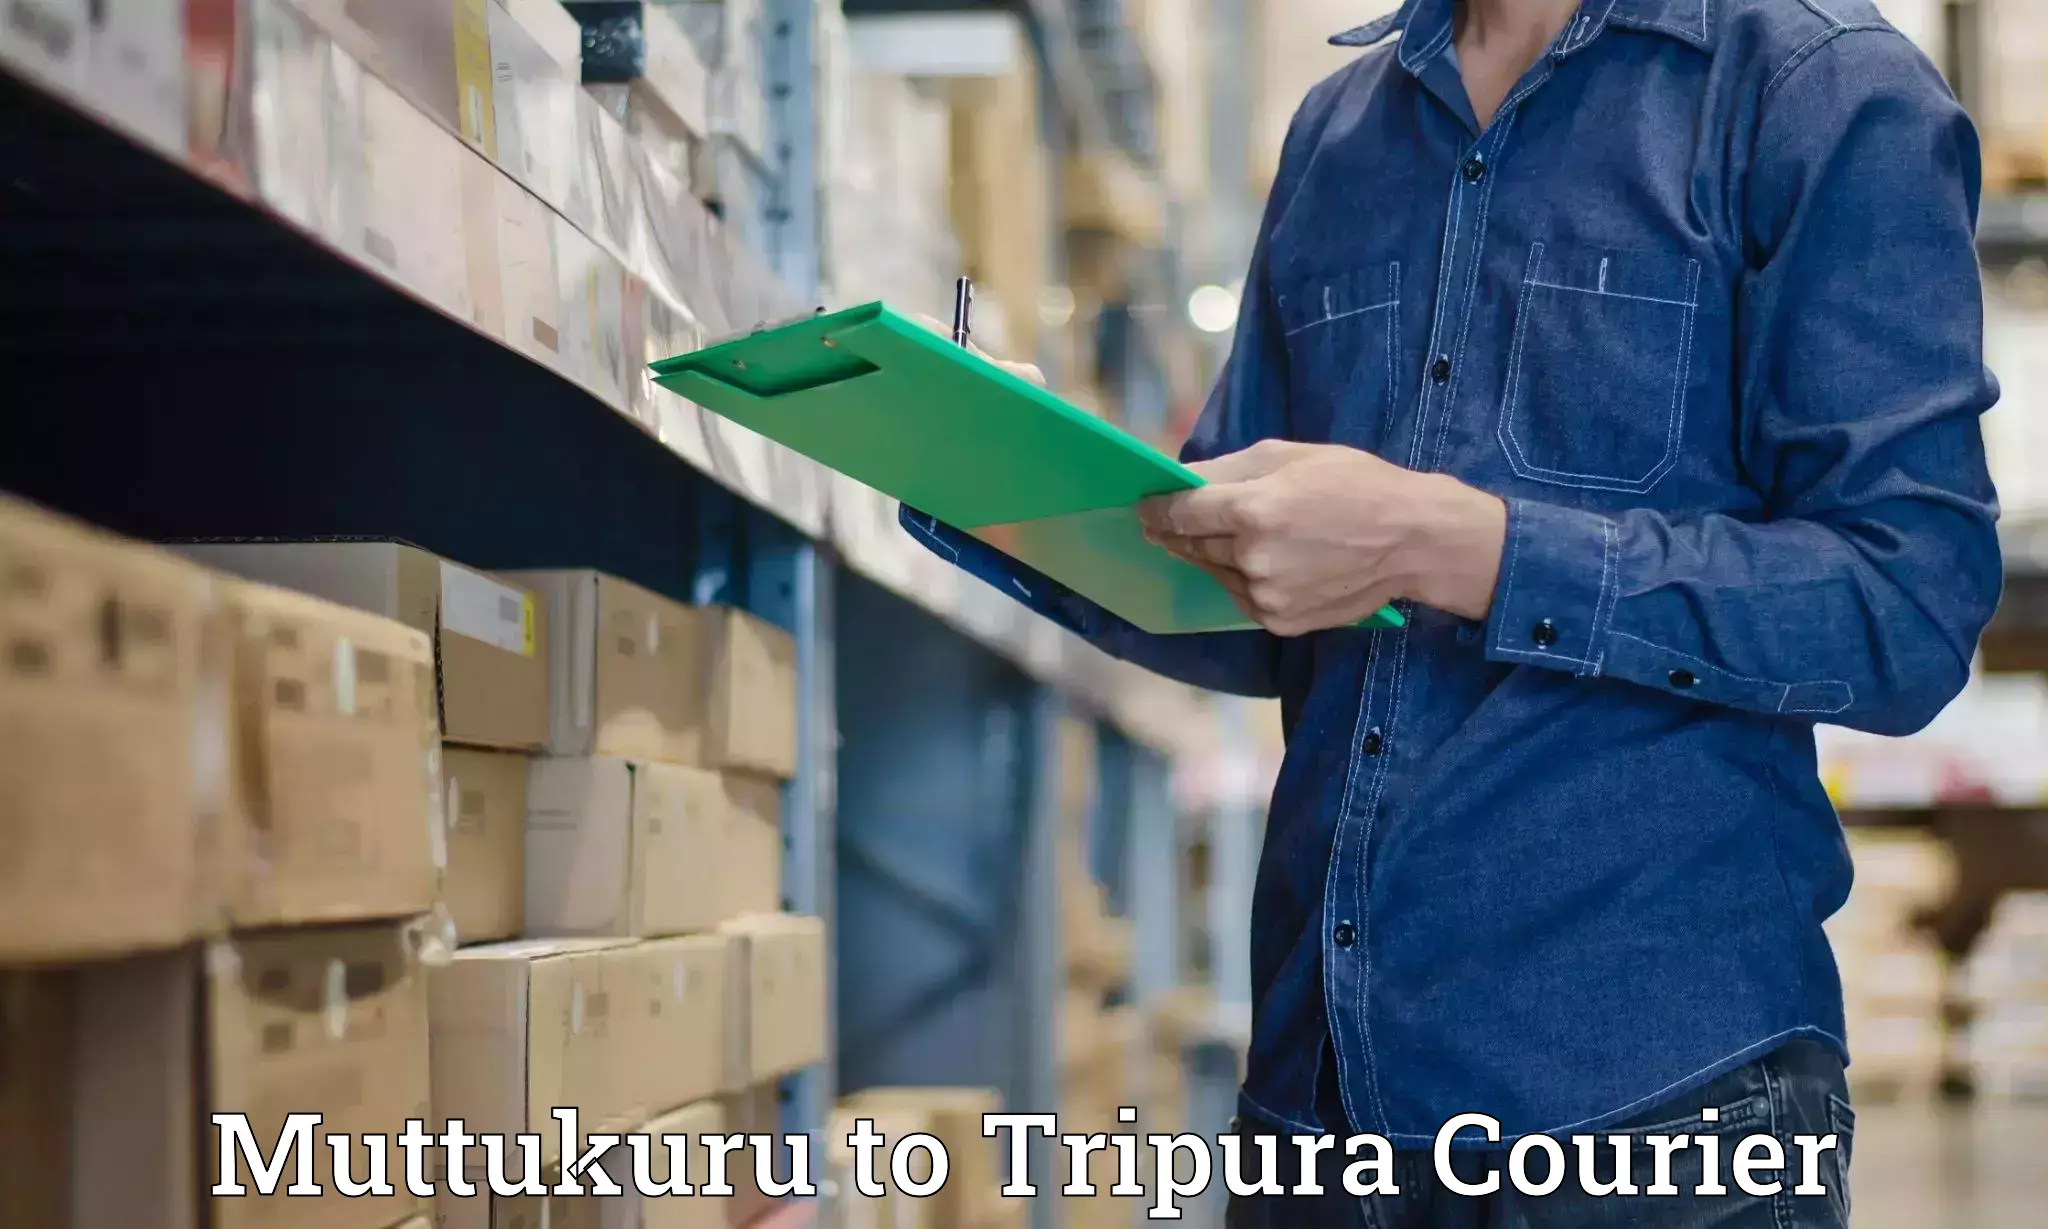 Automated parcel services Muttukuru to IIIT Agartala